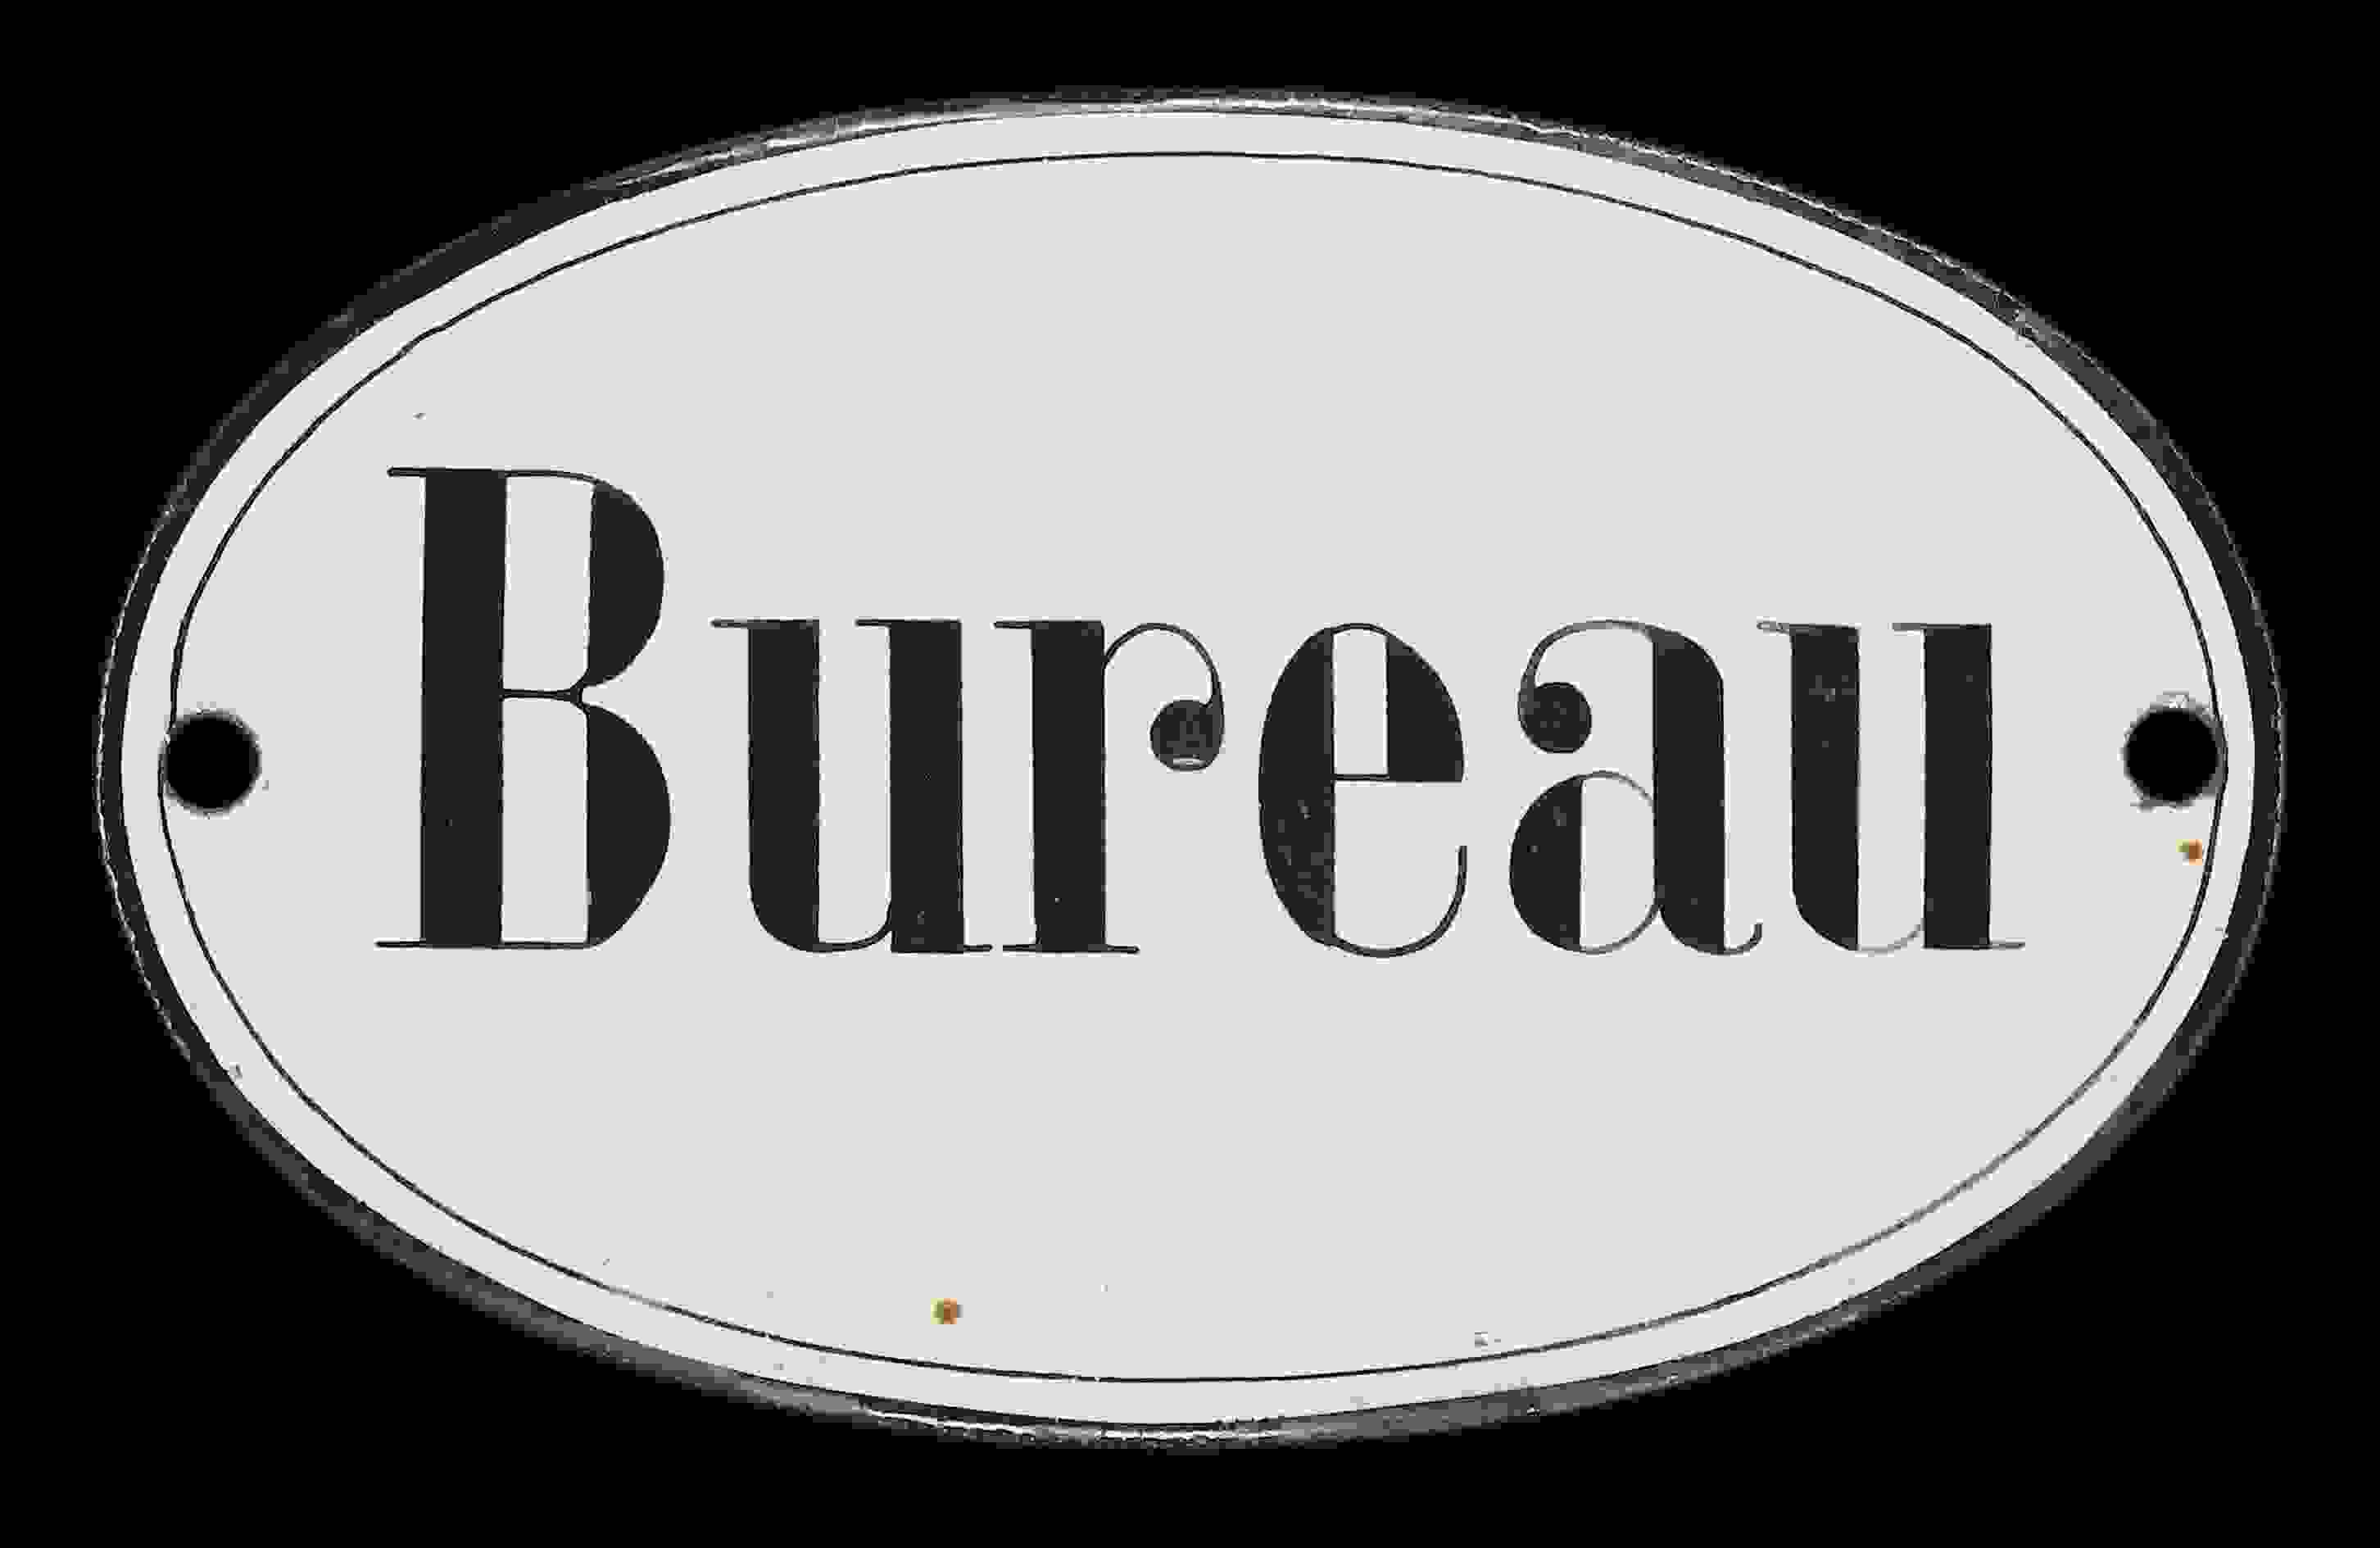 Bureau 